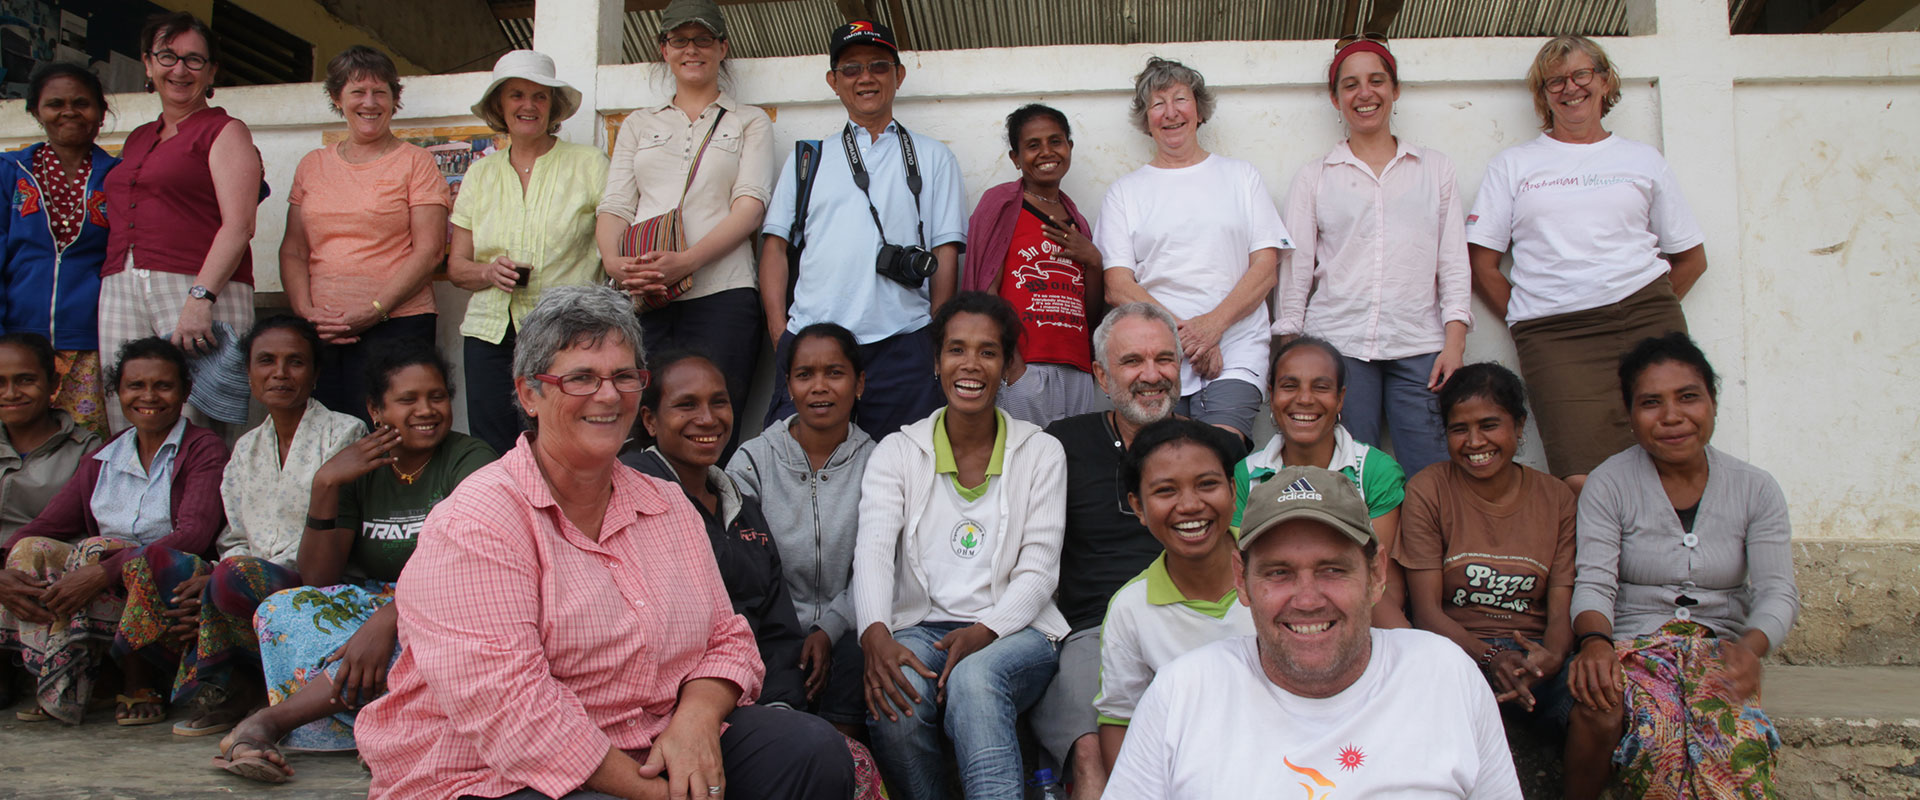 Palms Australia Encounter group in Timor-Leste